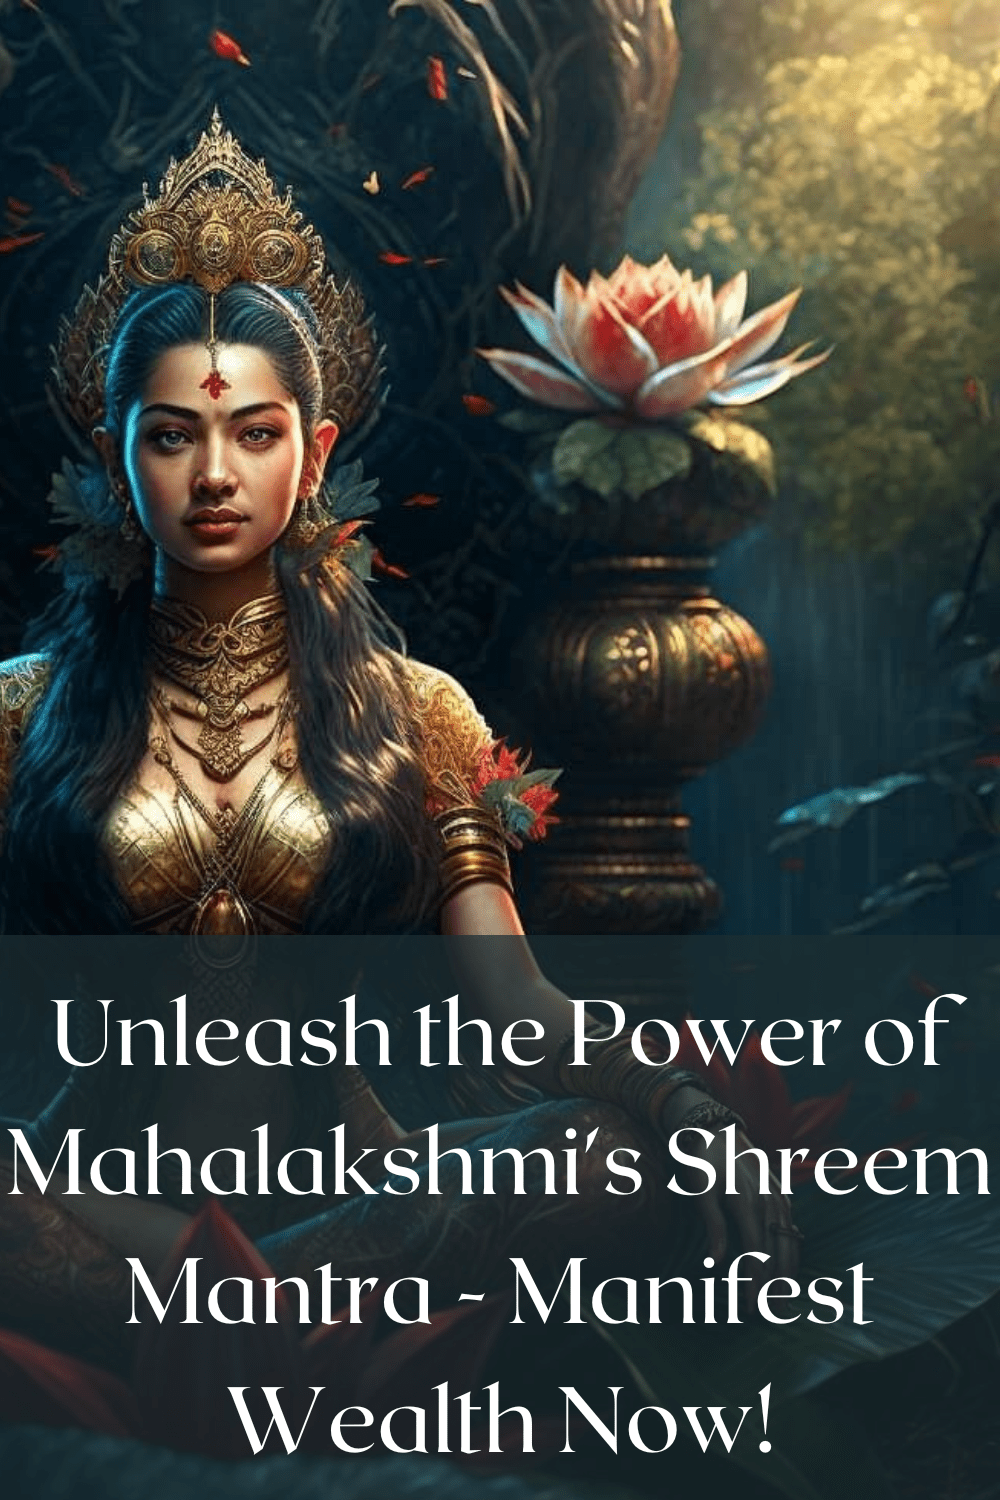 Mahalakshmi Mantra For Wealth